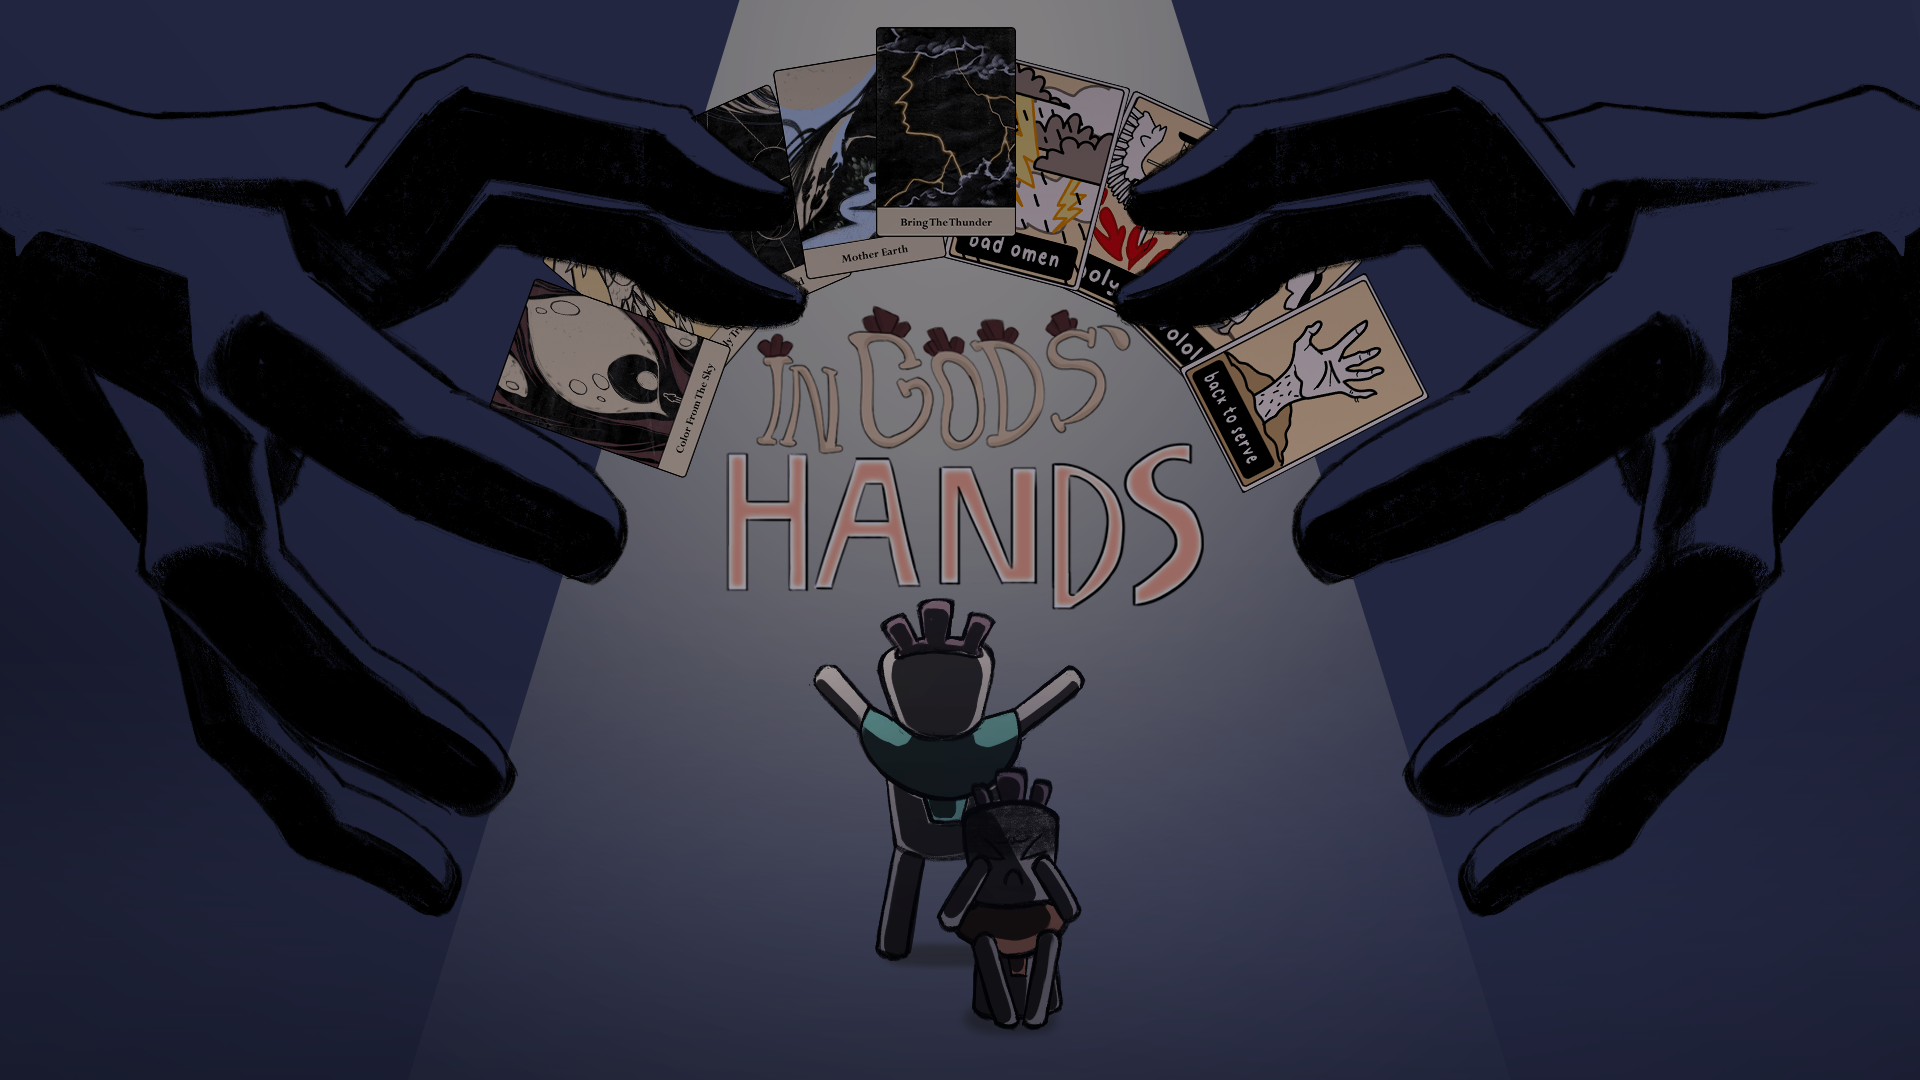 In Gods' Hands